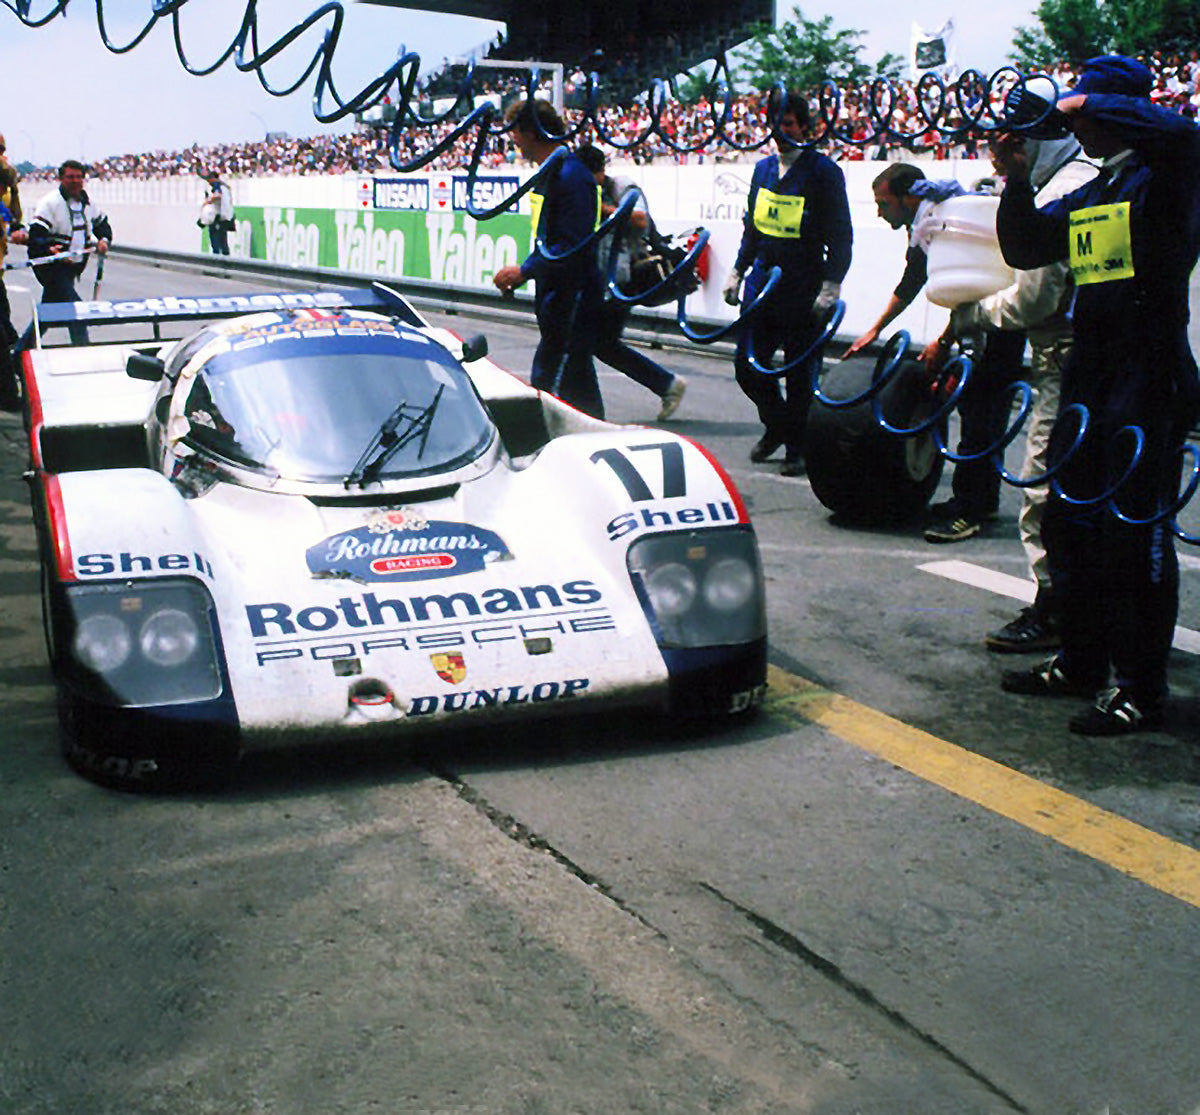 1987 Original Rothmans Porsche 962 Le Mans 24hr Race Winning Pit Crew Suit (Size M)